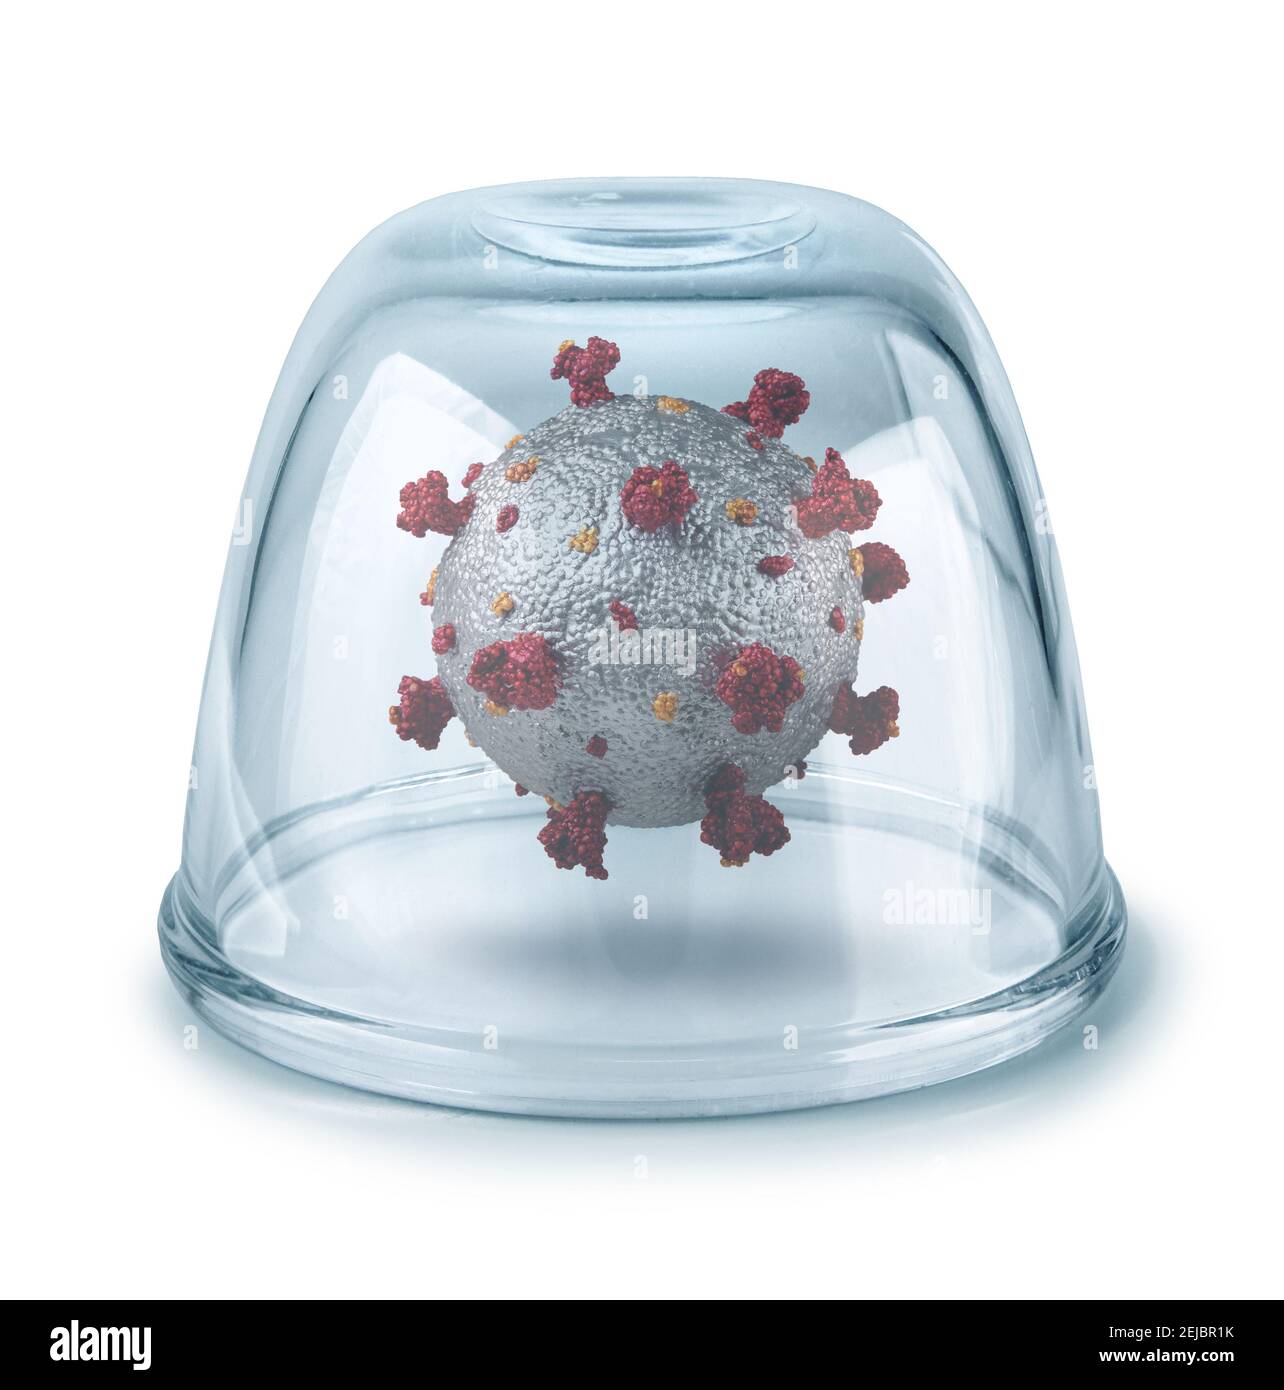 El virus de la corona capturado dentro del tazón de vidrio, detenga el concepto de prevención de la enfermedad pandémica Foto de stock